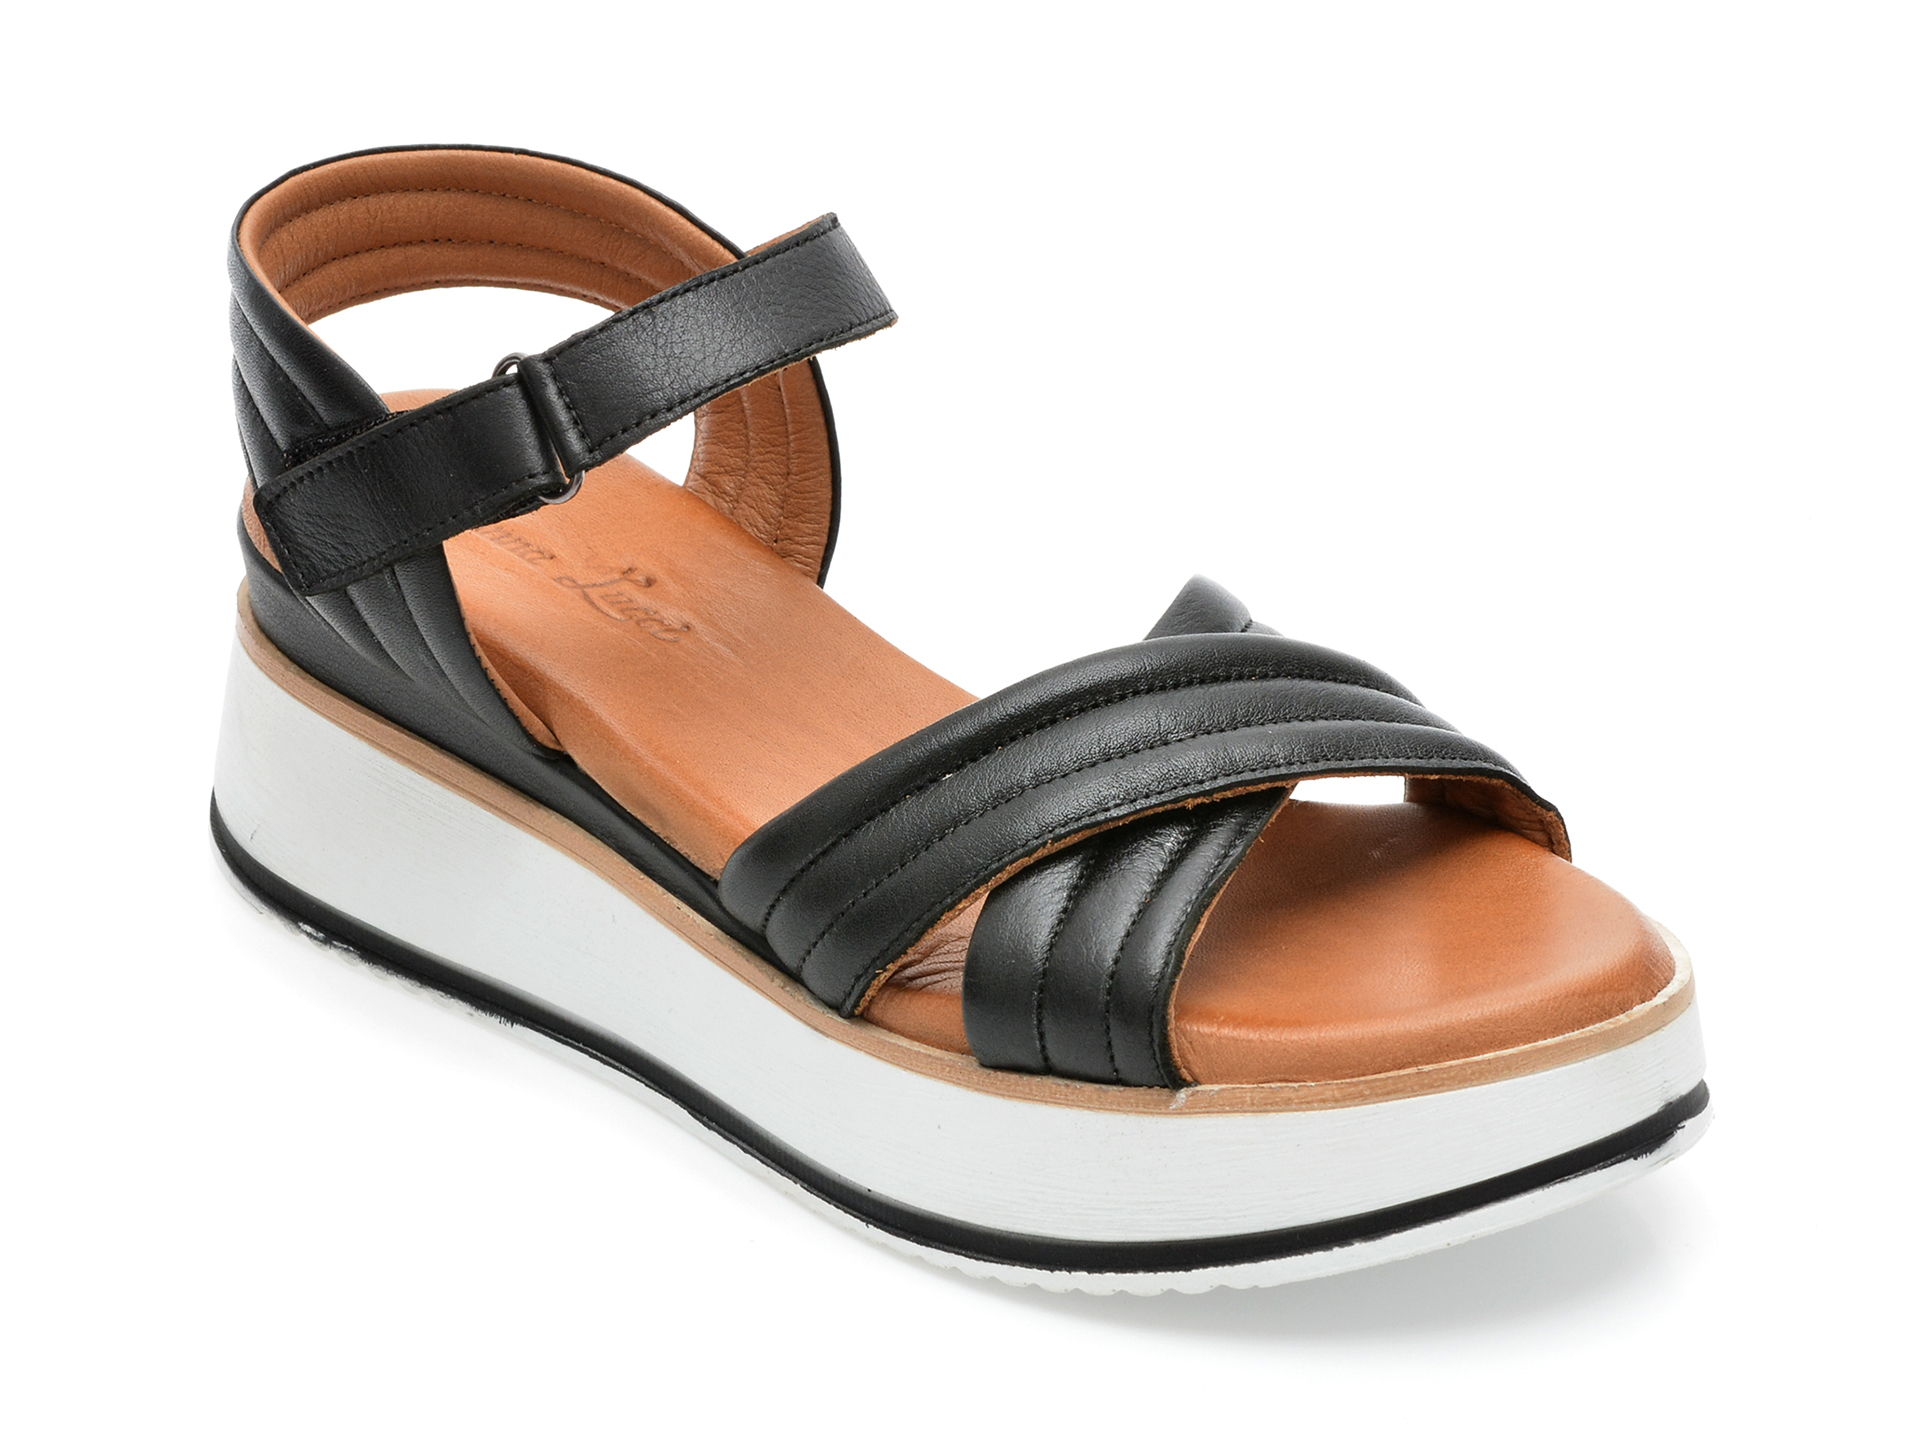 Sandale ANNA LUCCI negre, 1200, din piele naturala /femei/sandale imagine noua